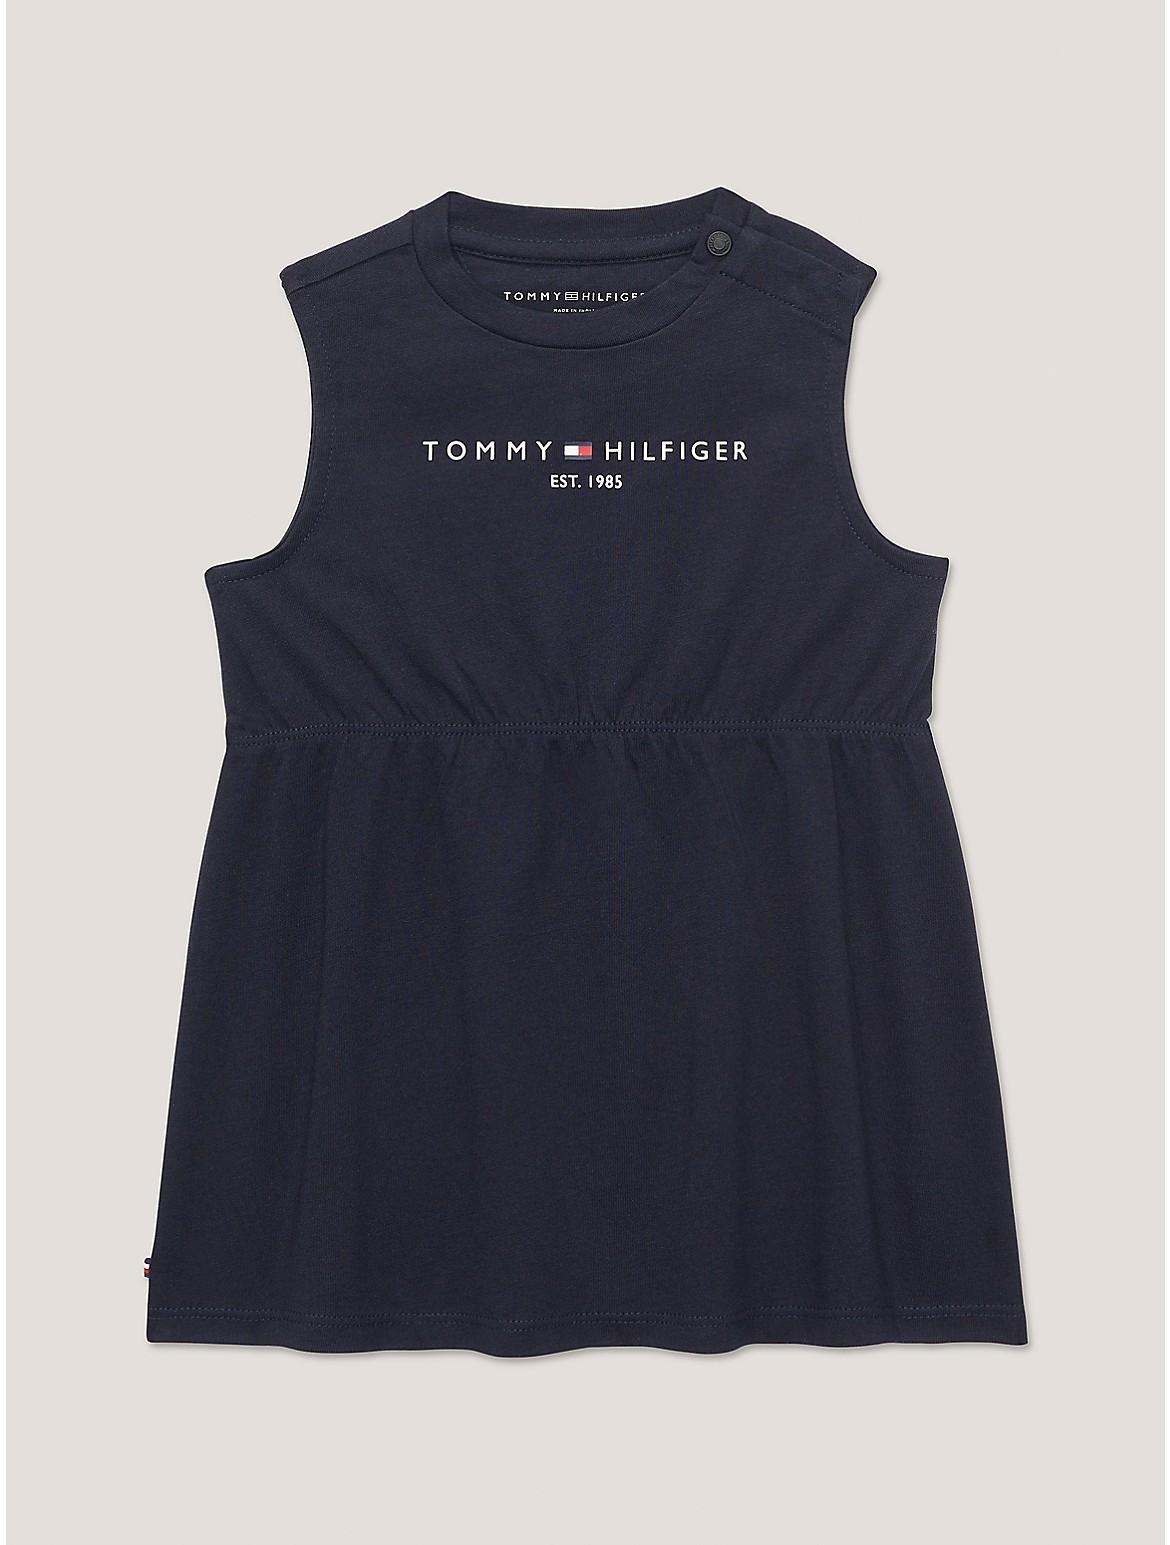 Tommy Hilfiger Girls' Babies' Sleeveless Logo T-Shirt Dress